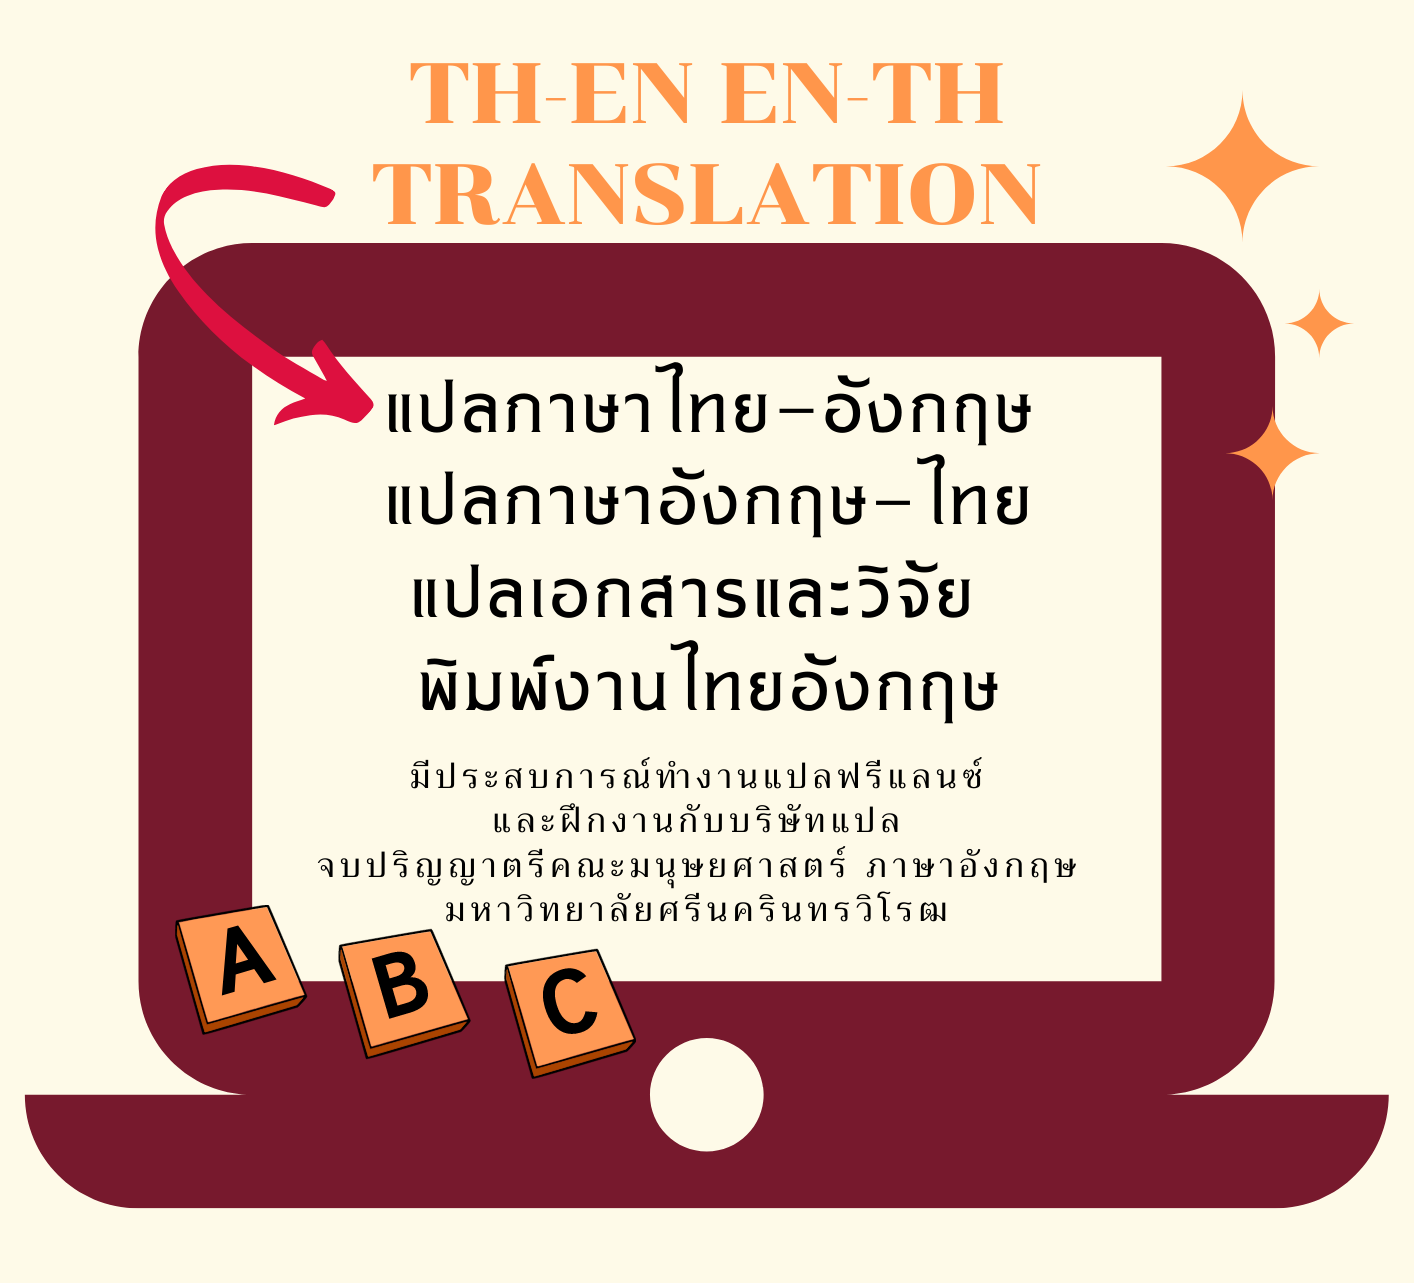 นักแปลภาษาไทย-อังกฤษ ภาษาอังกฤษ-ไทย | หาฟรีแลนซ์ หางานฟรีแลนซ์ ที่เดียวจบ  ครบทั้งหางานและหาคนมาทำงาน